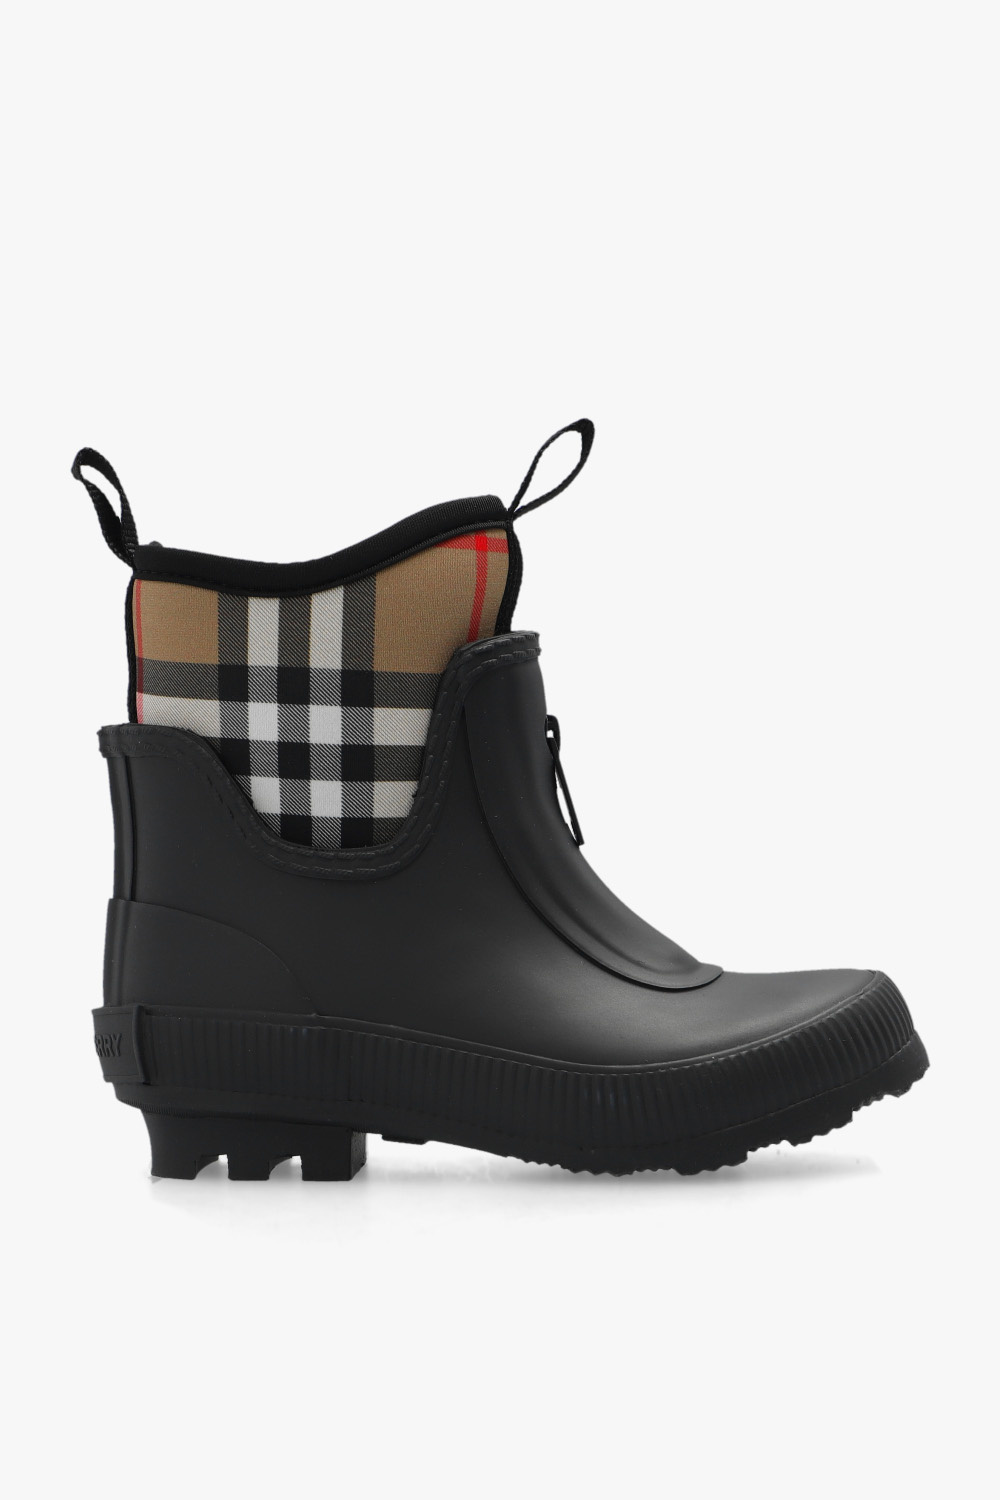 burberry Aldfield Kids ‘Mini Flinton’ rain boots